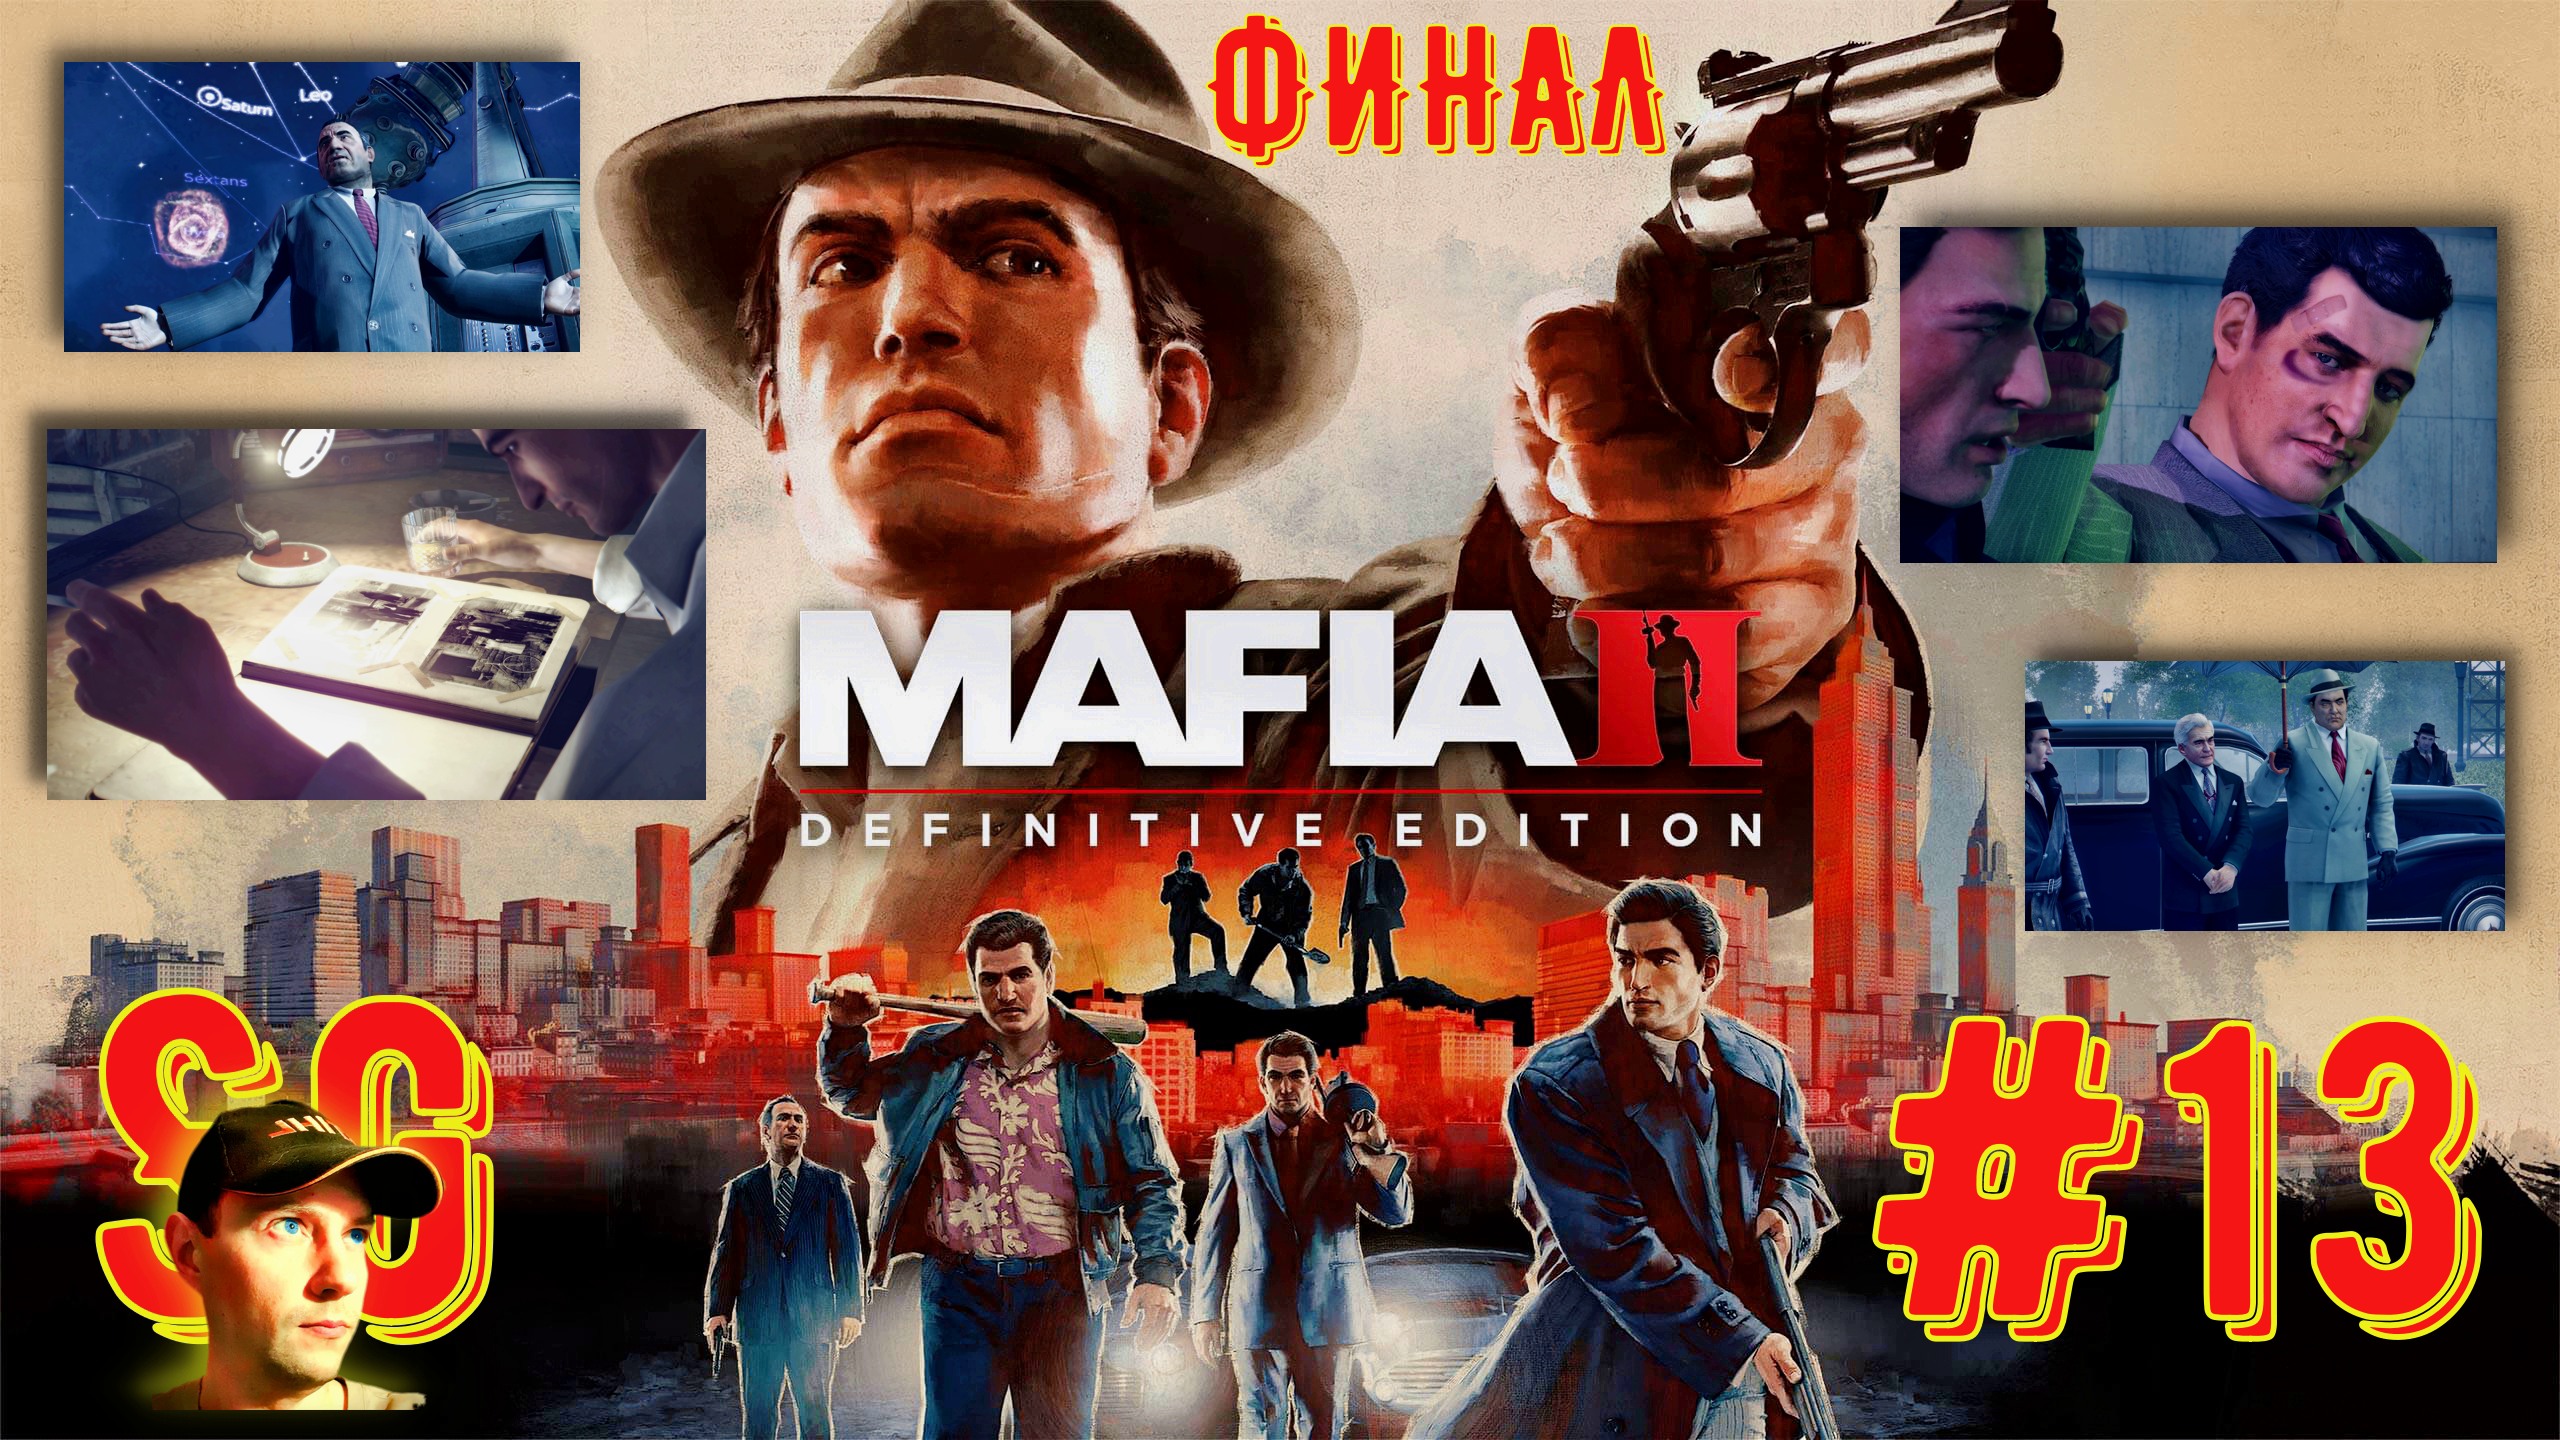 #13 МАФИЯ 2. ФИНАЛ. Mafia II: Definitive Edition. Игрофильм. С семьей покончено. Пути разошлись?18+